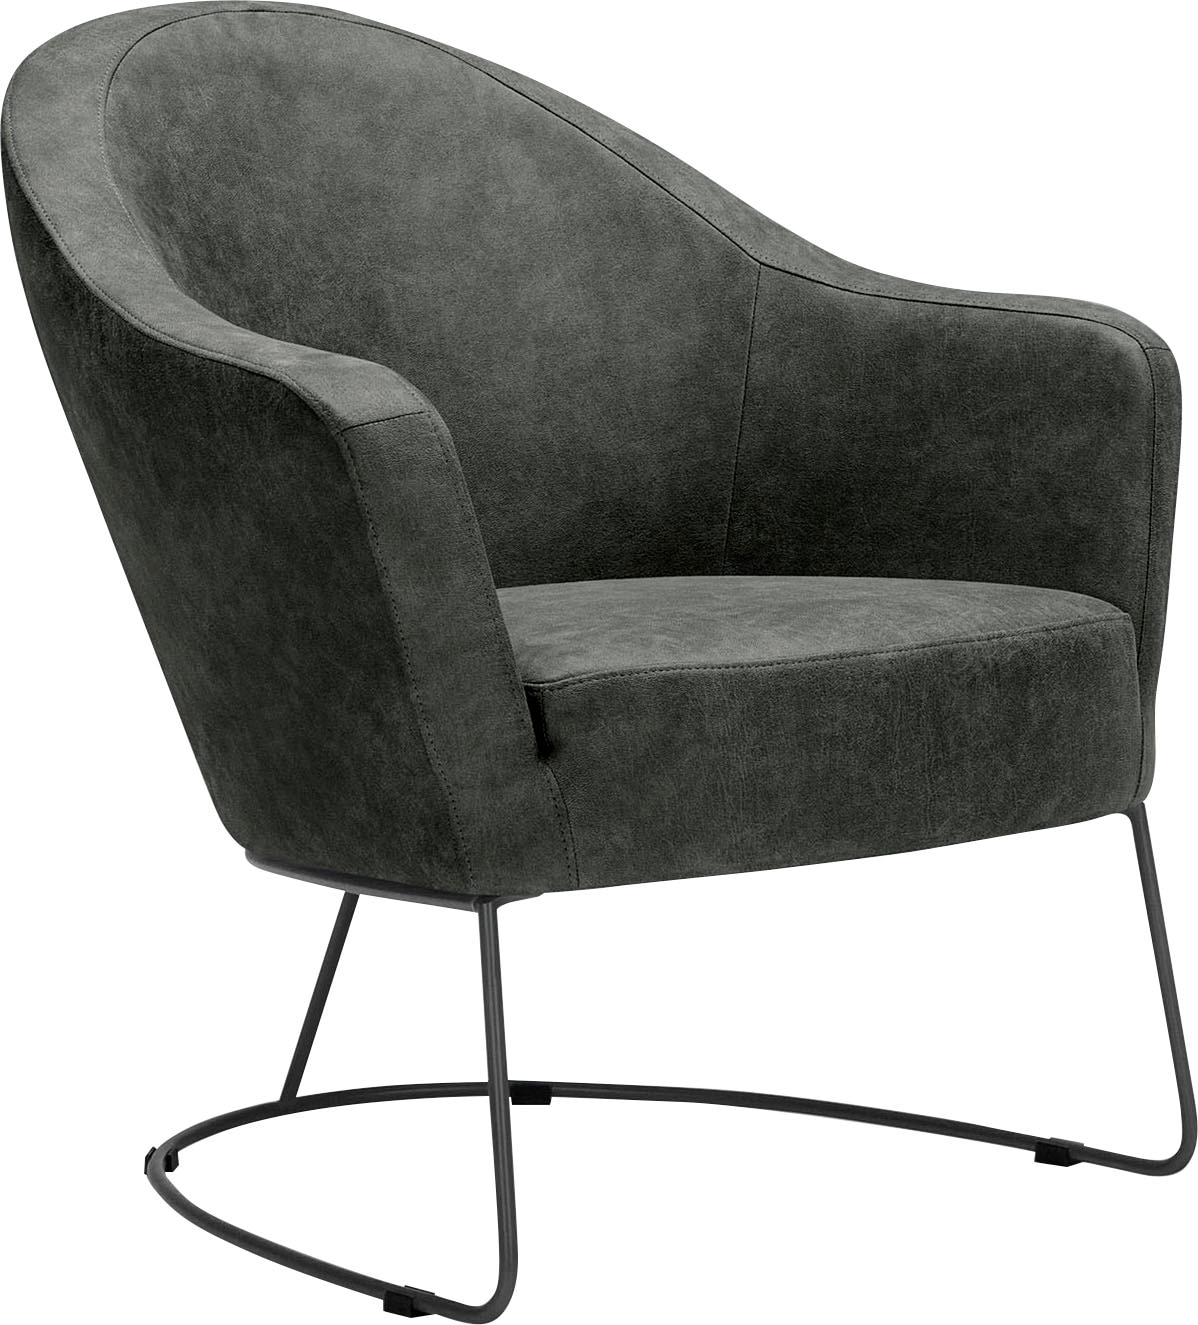 grau, Metallrahmen in luftiges Loungesessel Formschaum »Grape«, Sitzfläche LOVI günstig für Sitzgefühl kaufen